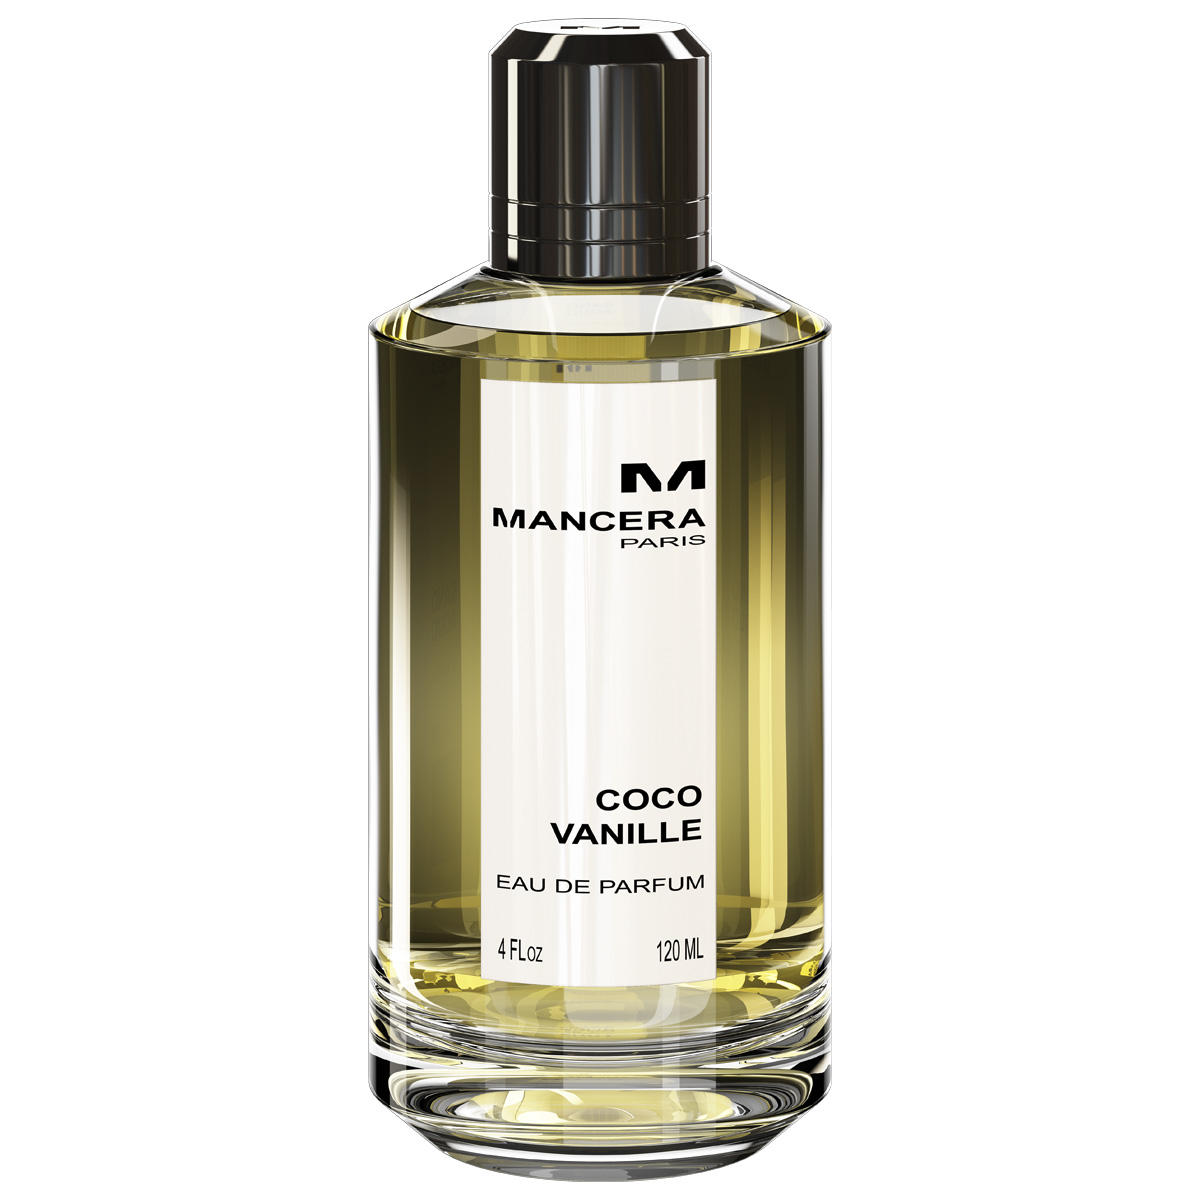 MANCERA Coco Vanille Eau de Parfum  120 ml